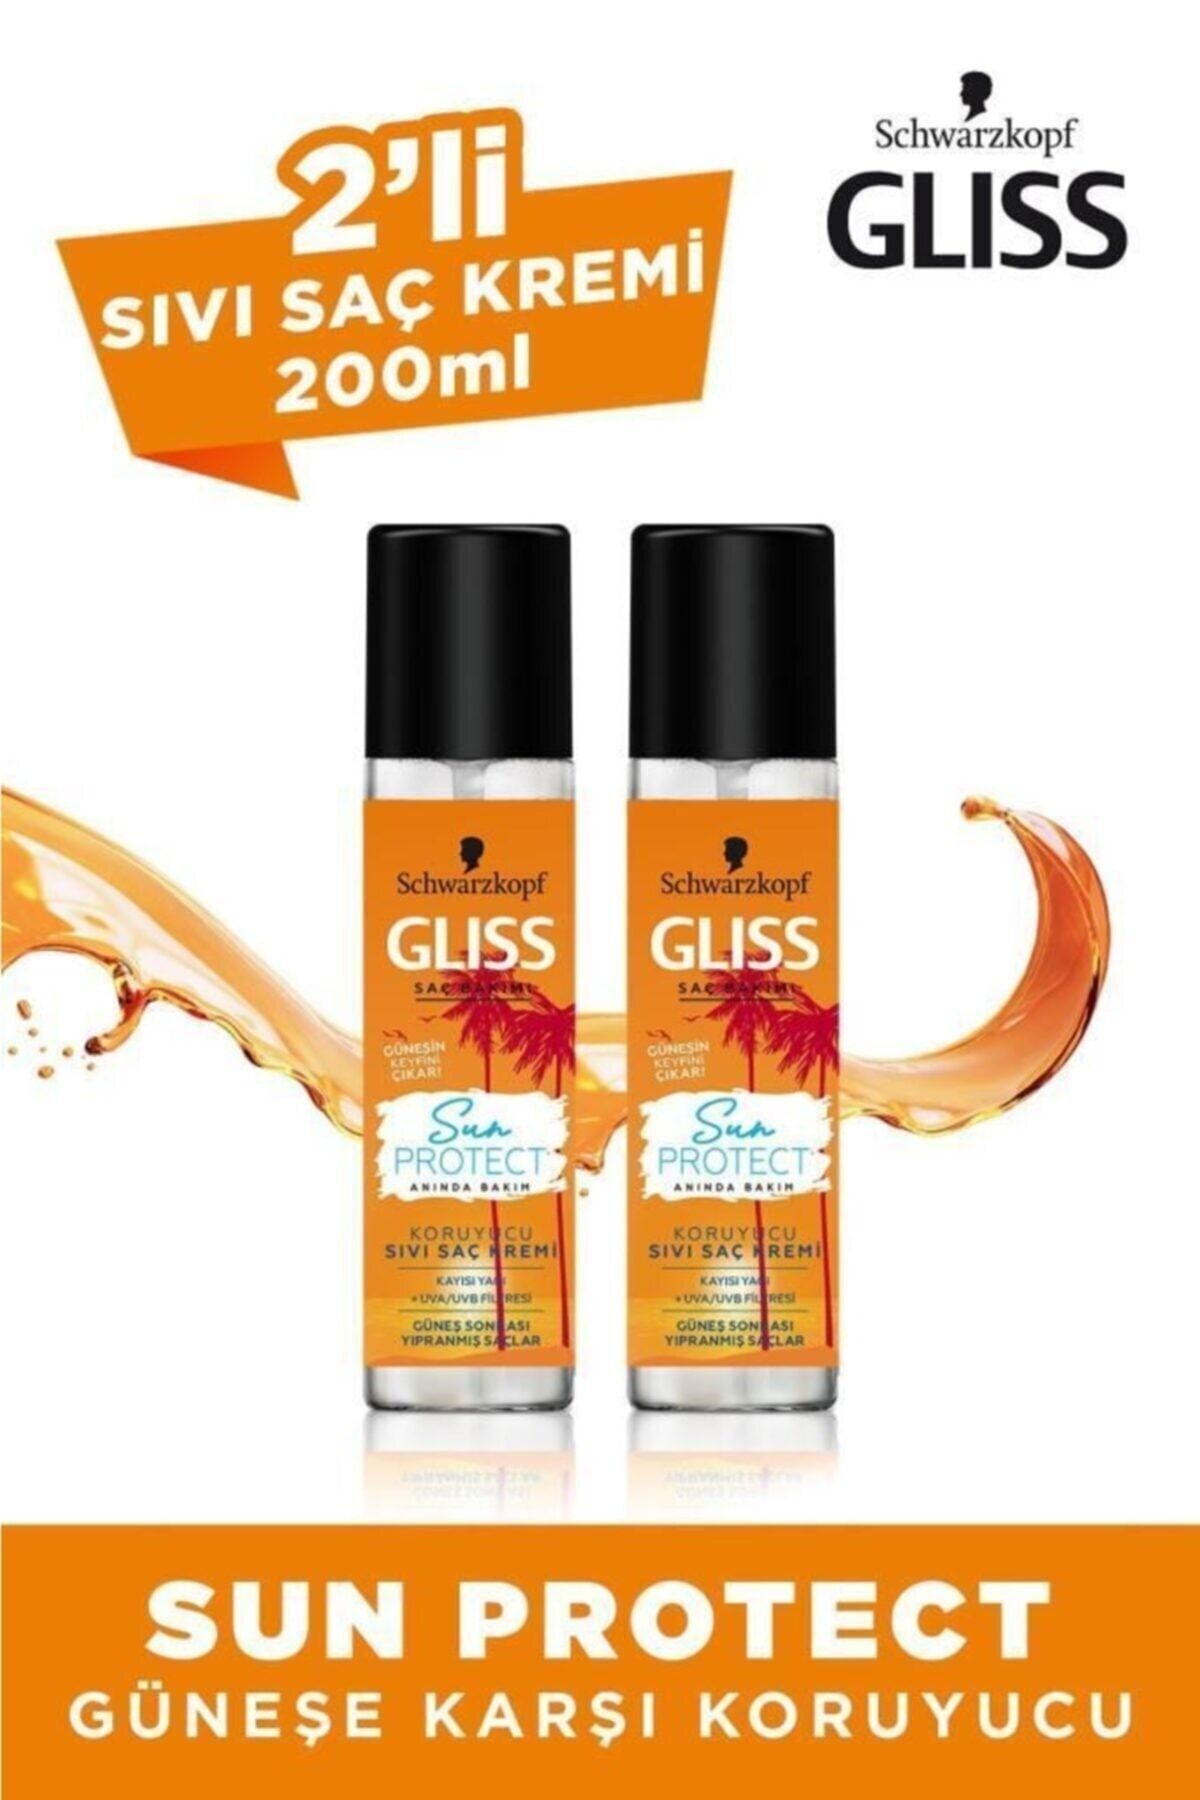 Gliss Sun Protect Güneşe Karşı Koruyucu Durulanmayan Sıvı Saç Kremi 200 ML 2'li